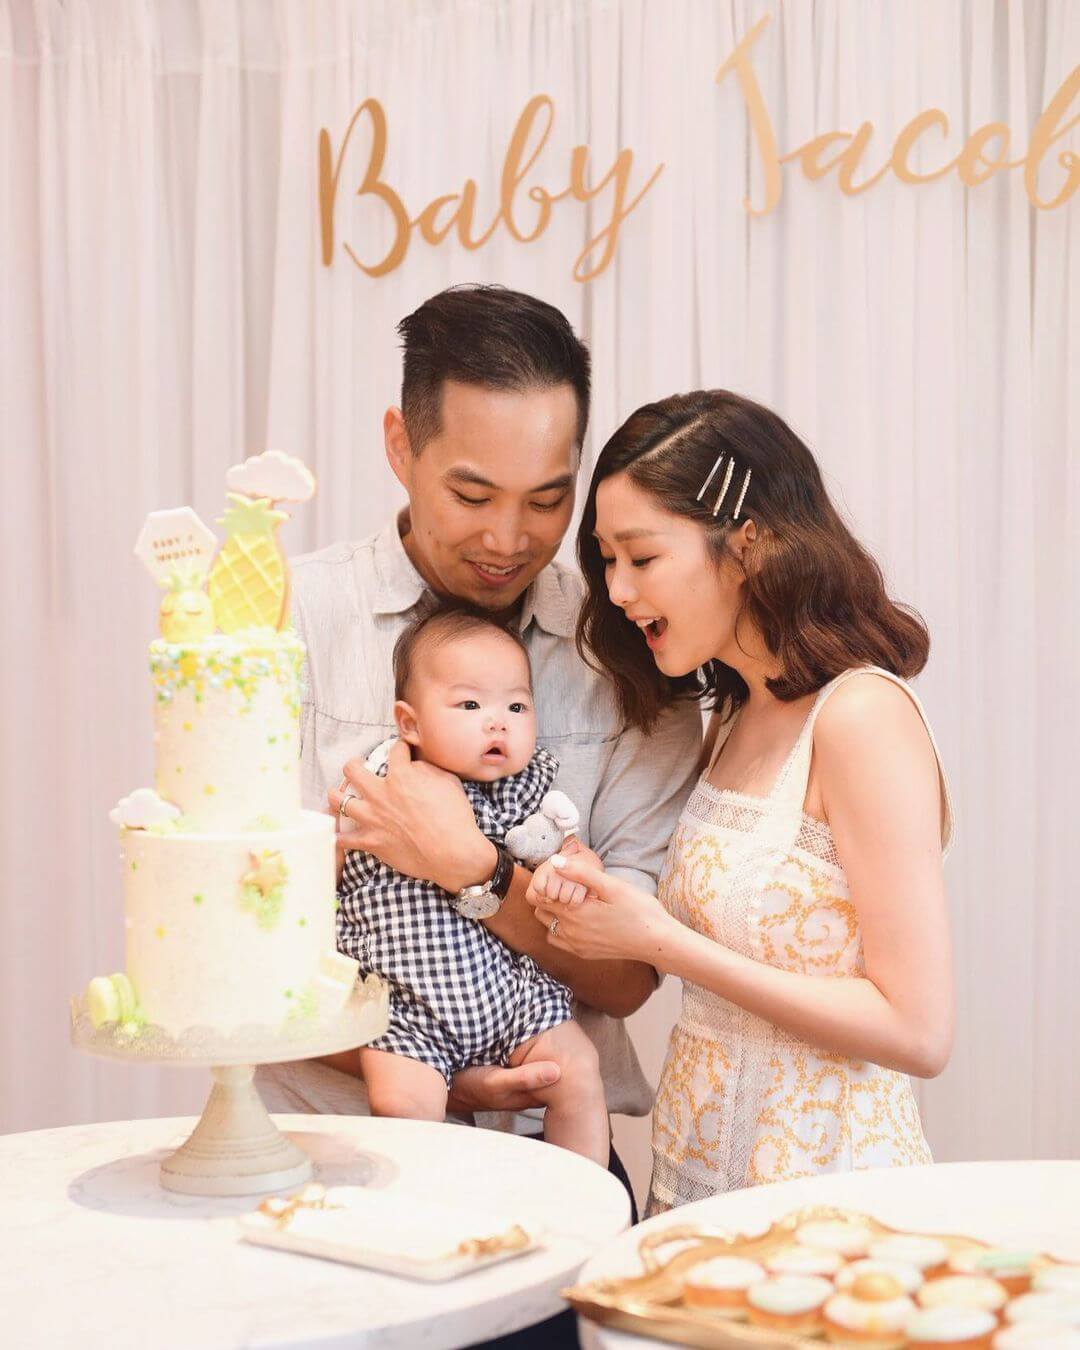 香香於2019年誕下兒子Jacob